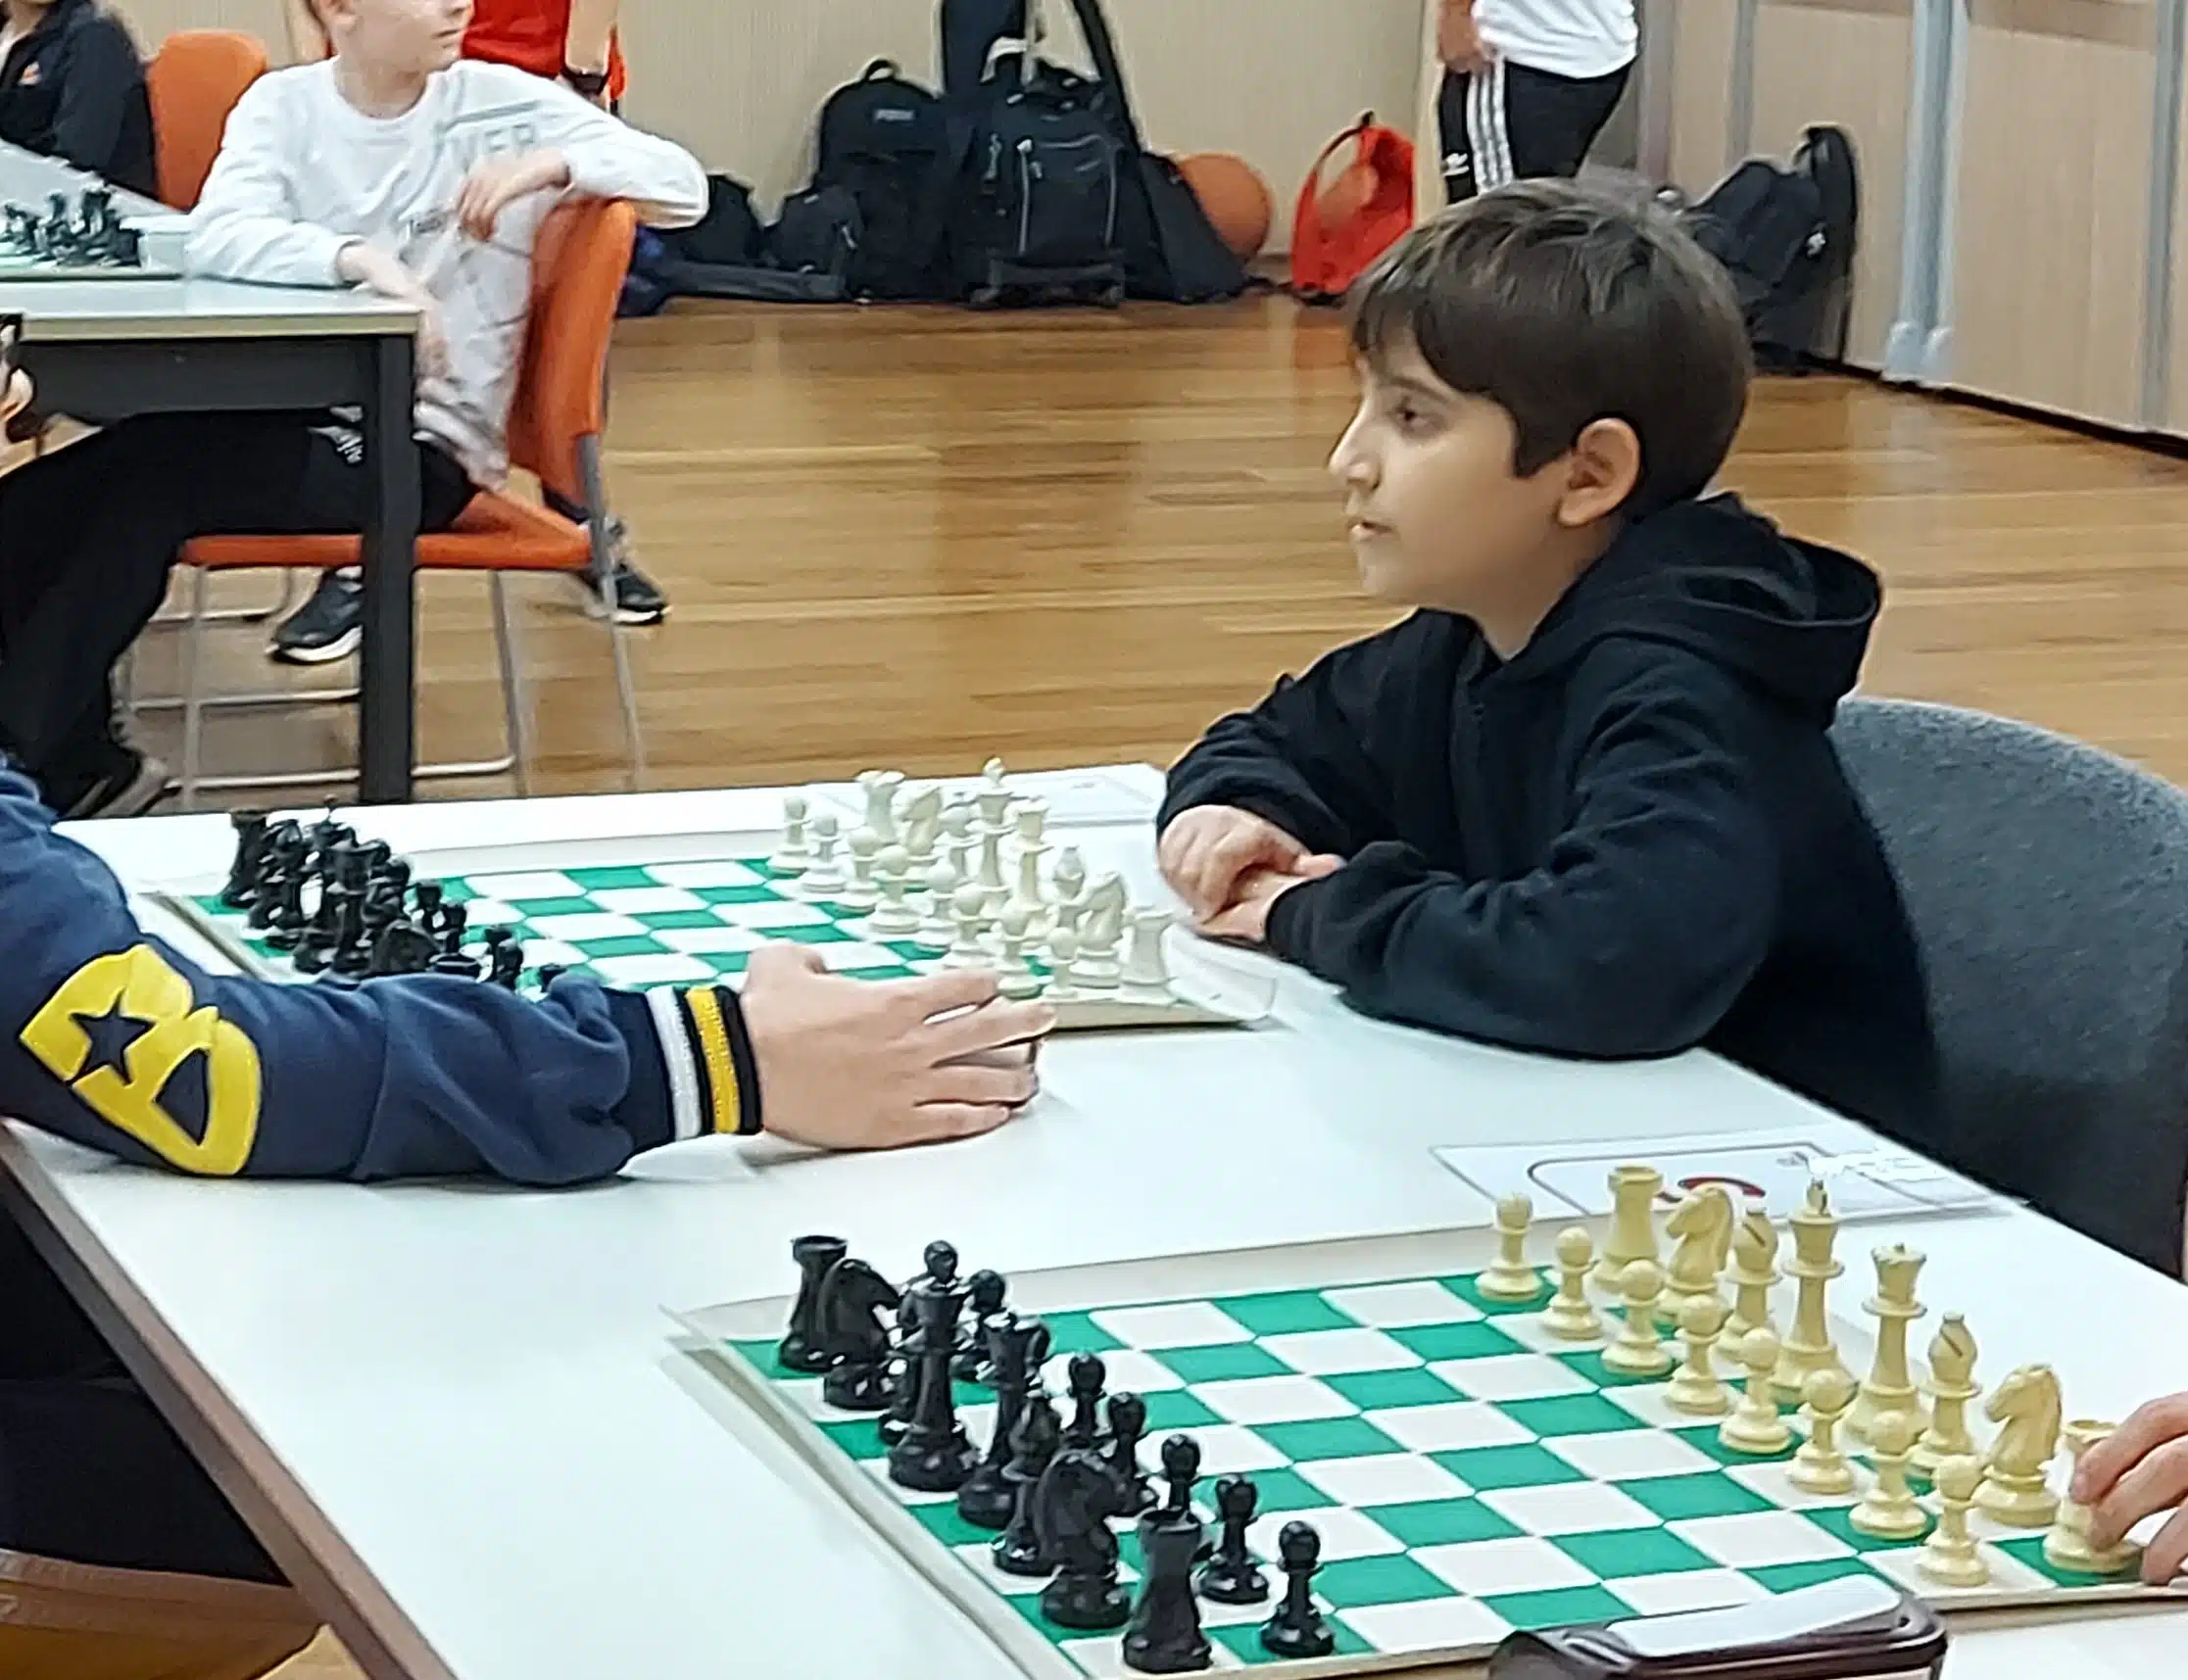 Sucesso de 'O Gambito da Rainha' leva a aumento de interesse pelo xadrez